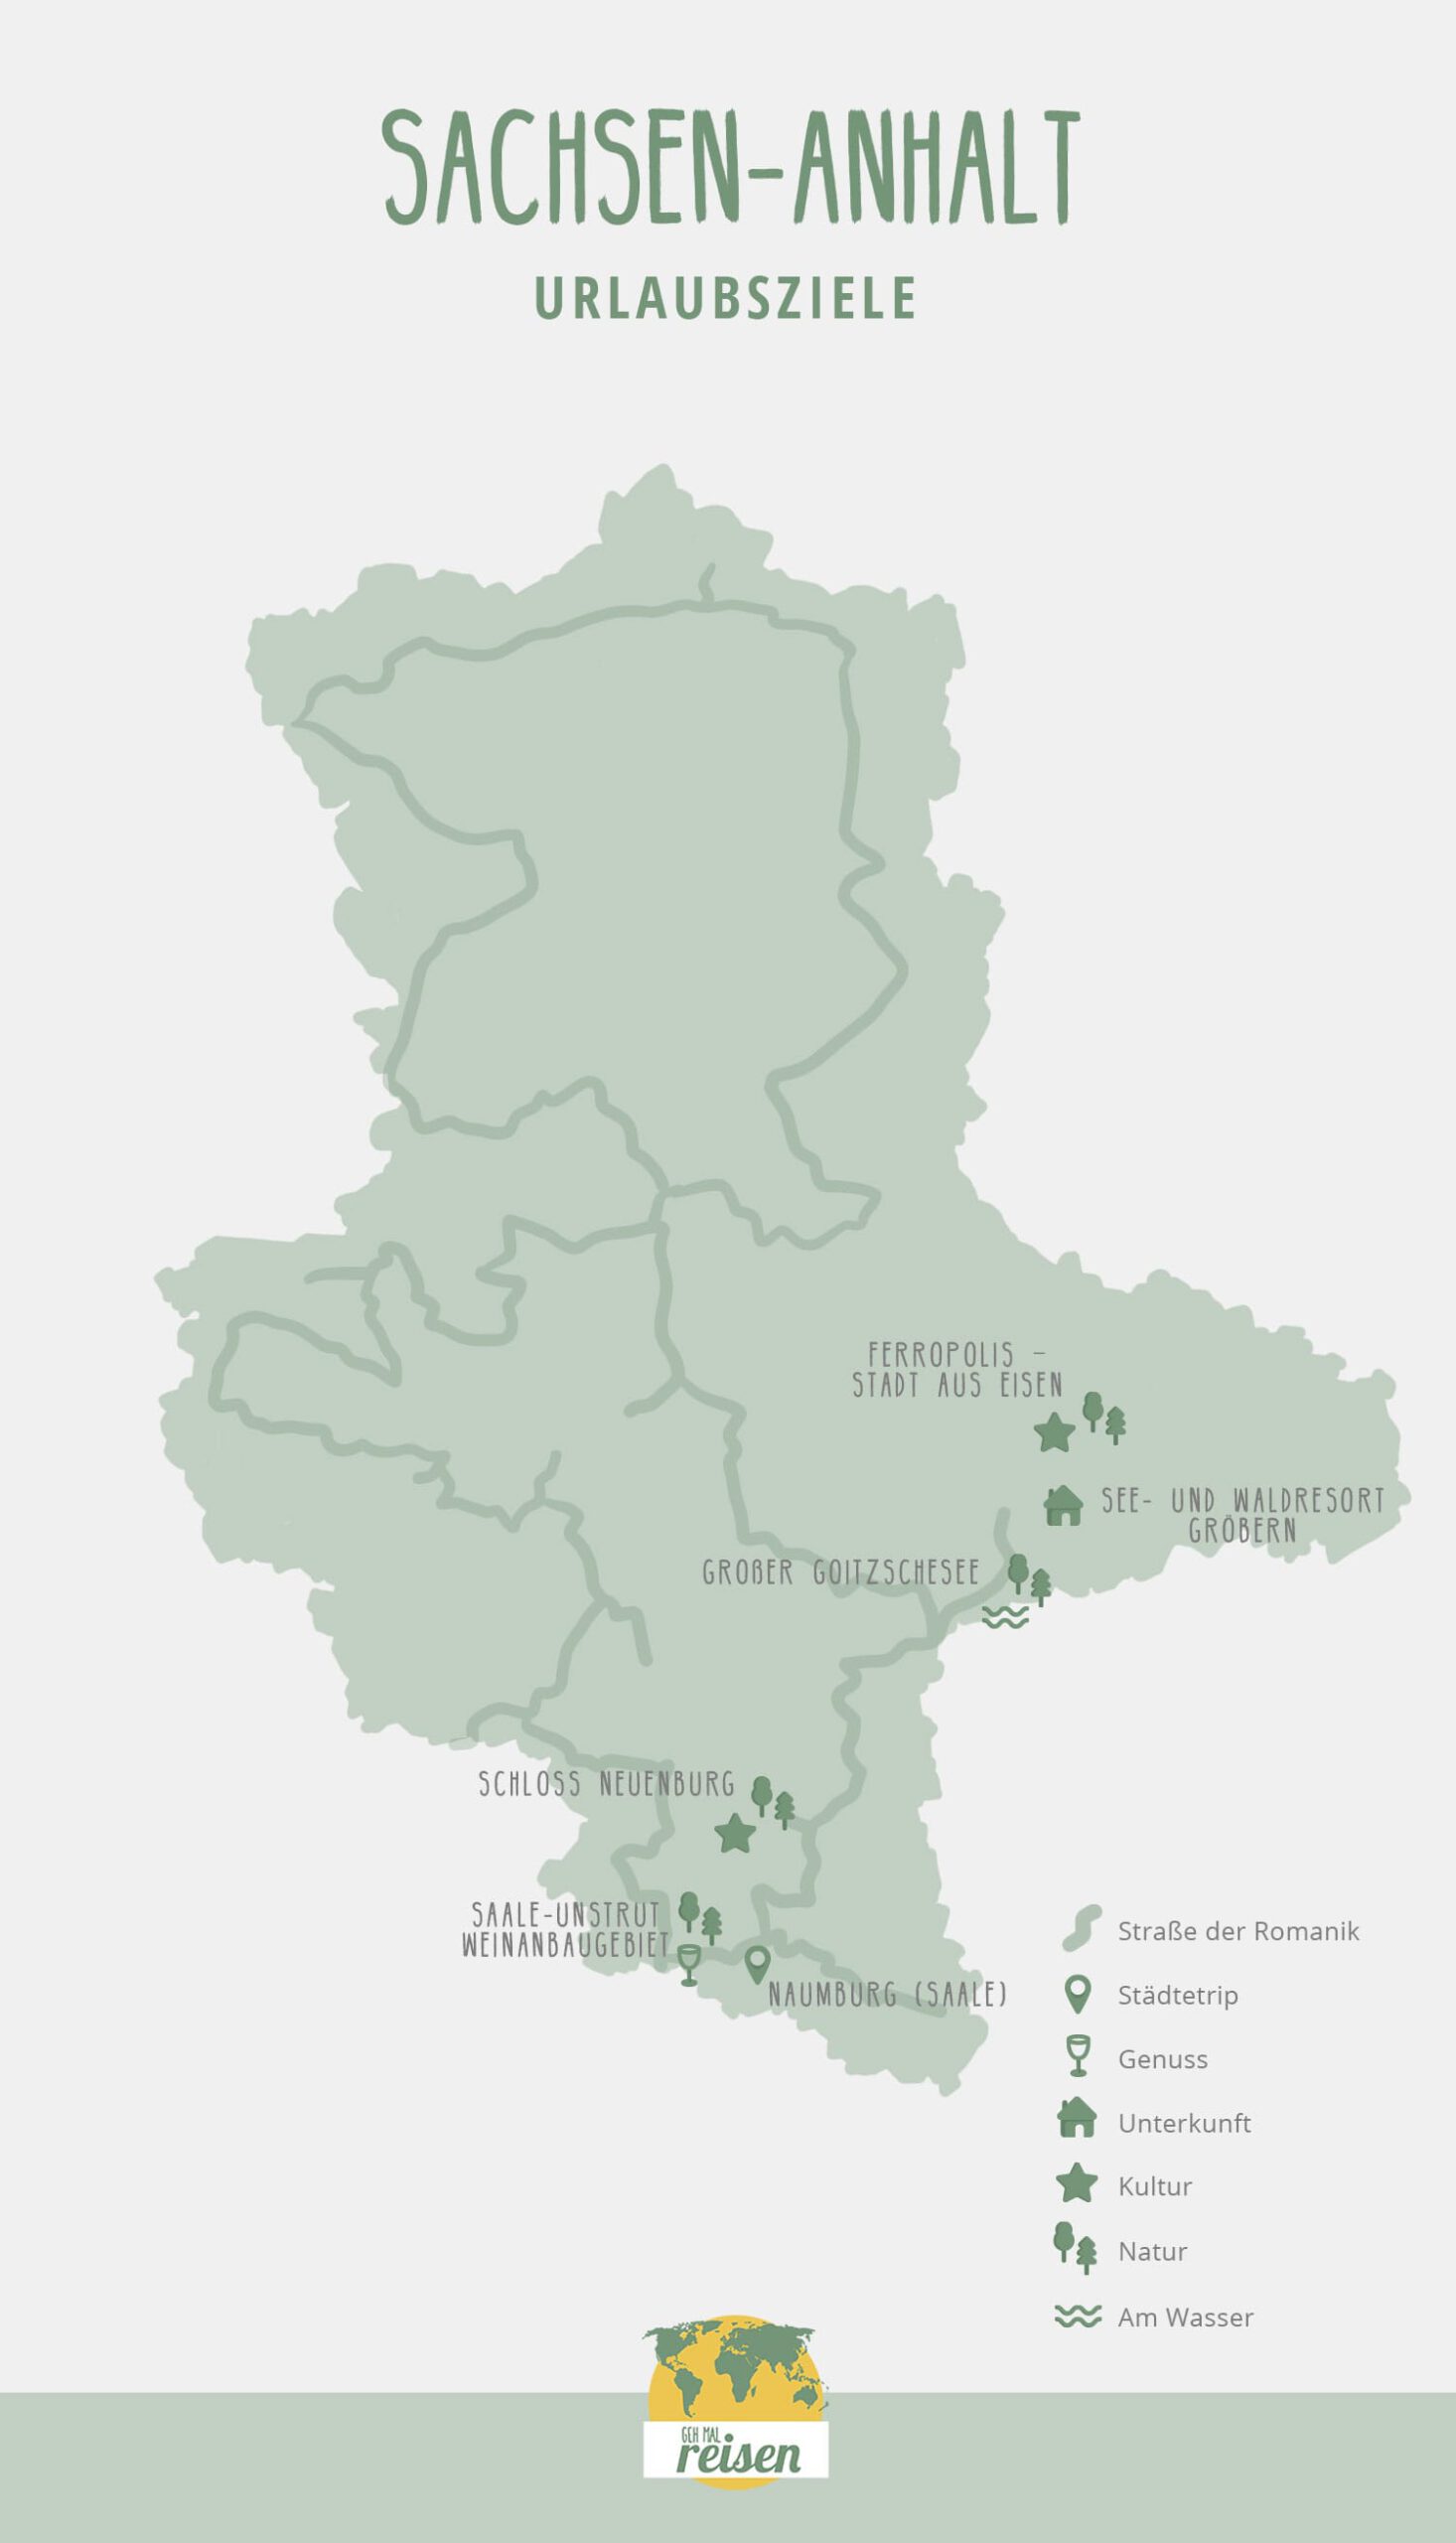 Sachsen-Anhalt: Urlaubsziele auf der Karte